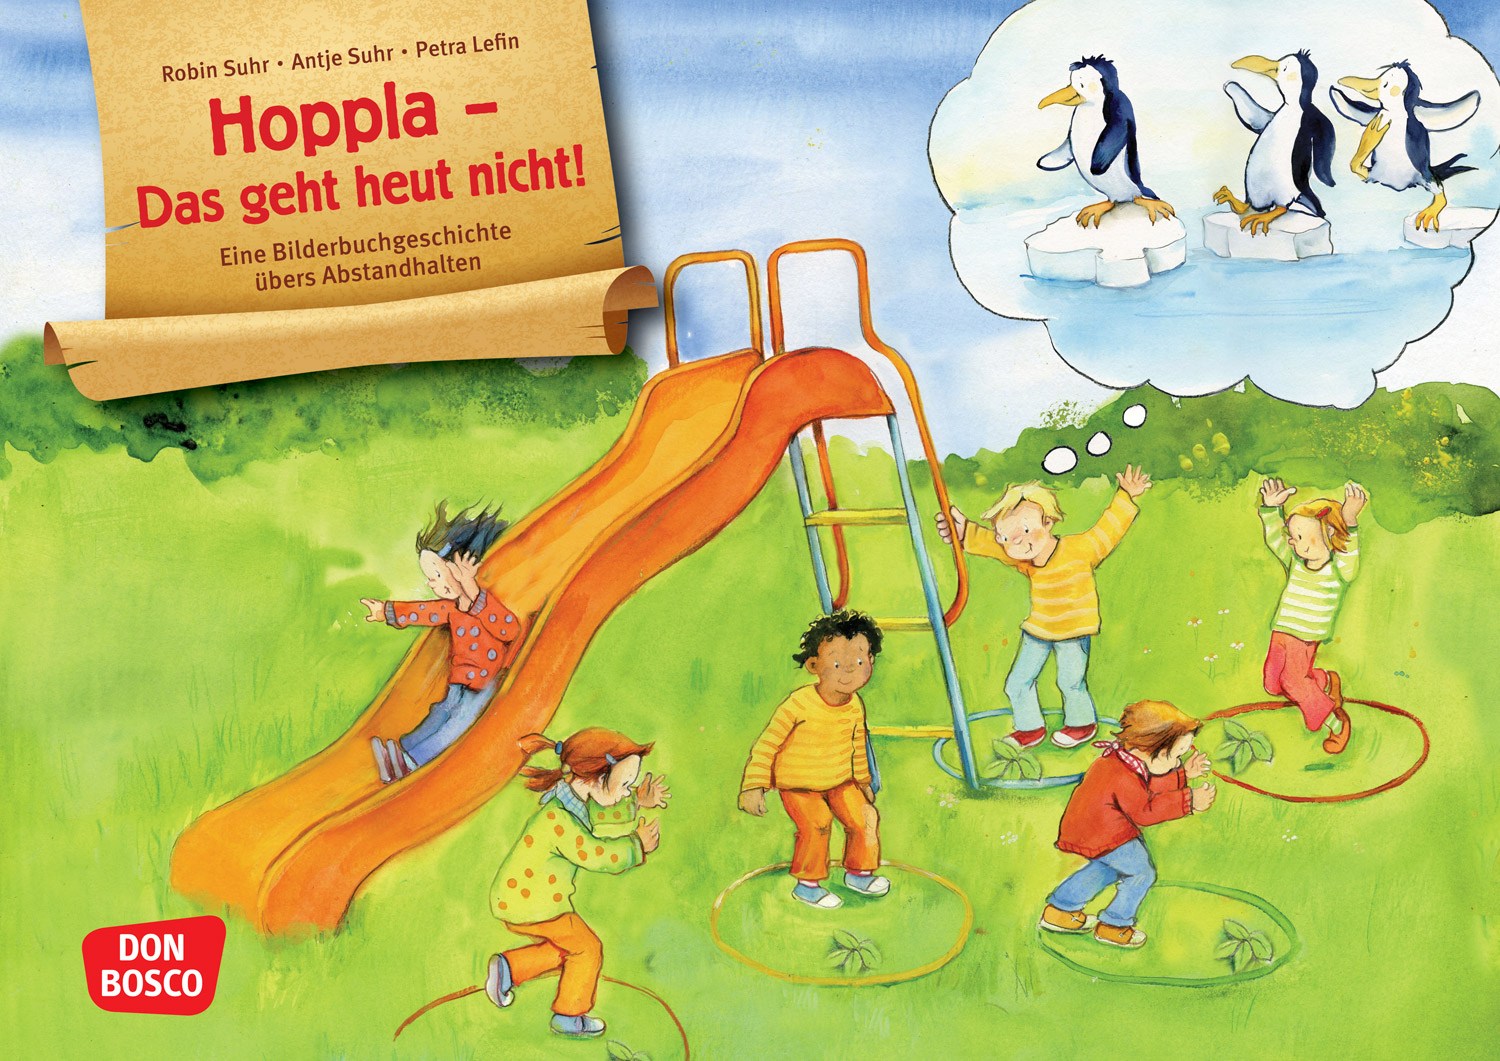 Kamishibai Bildkarten: Hoppla - Das geht heut nicht! Eine Bilderbuchgeschichte übers Abstandhalten.